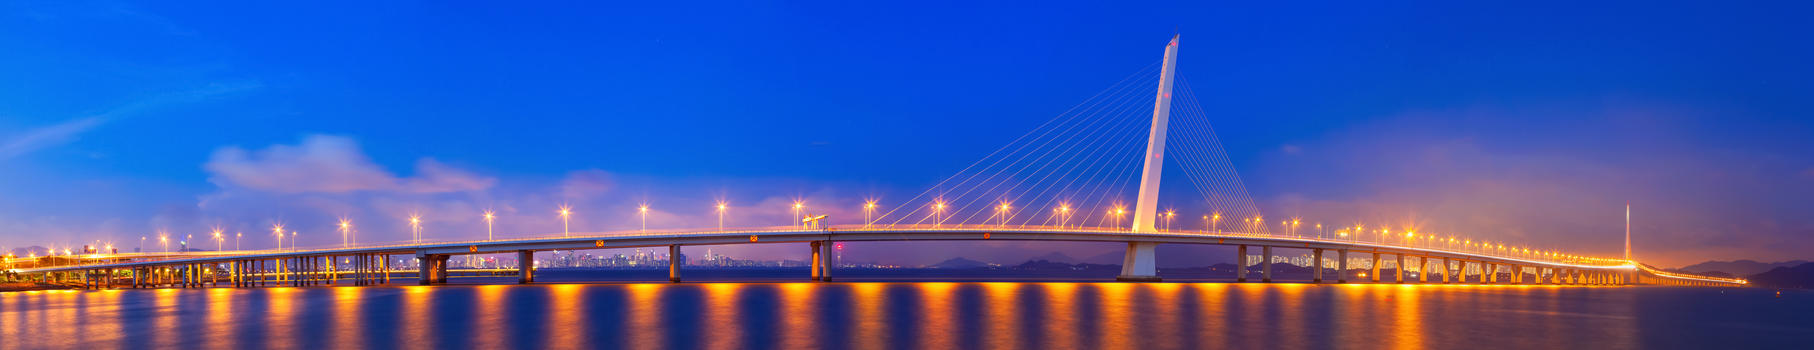 跨海大桥城市夜景图片素材免费下载